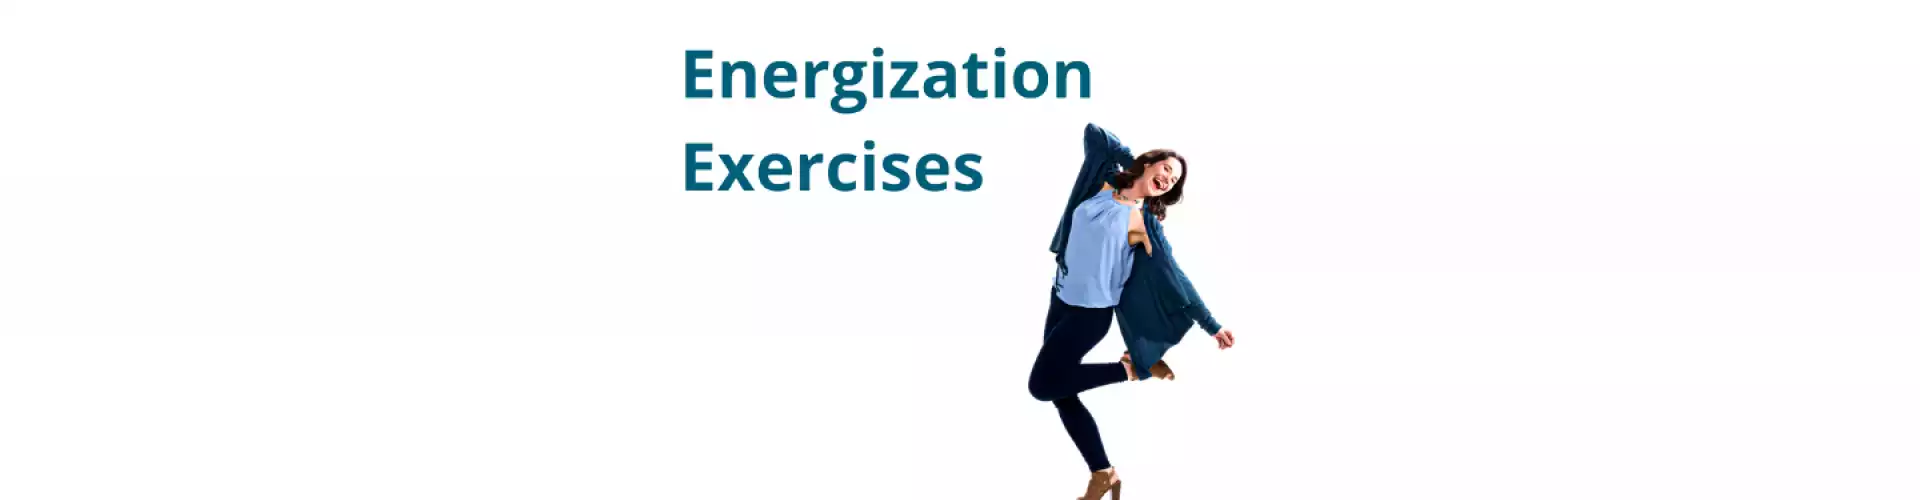 Energization Exercises